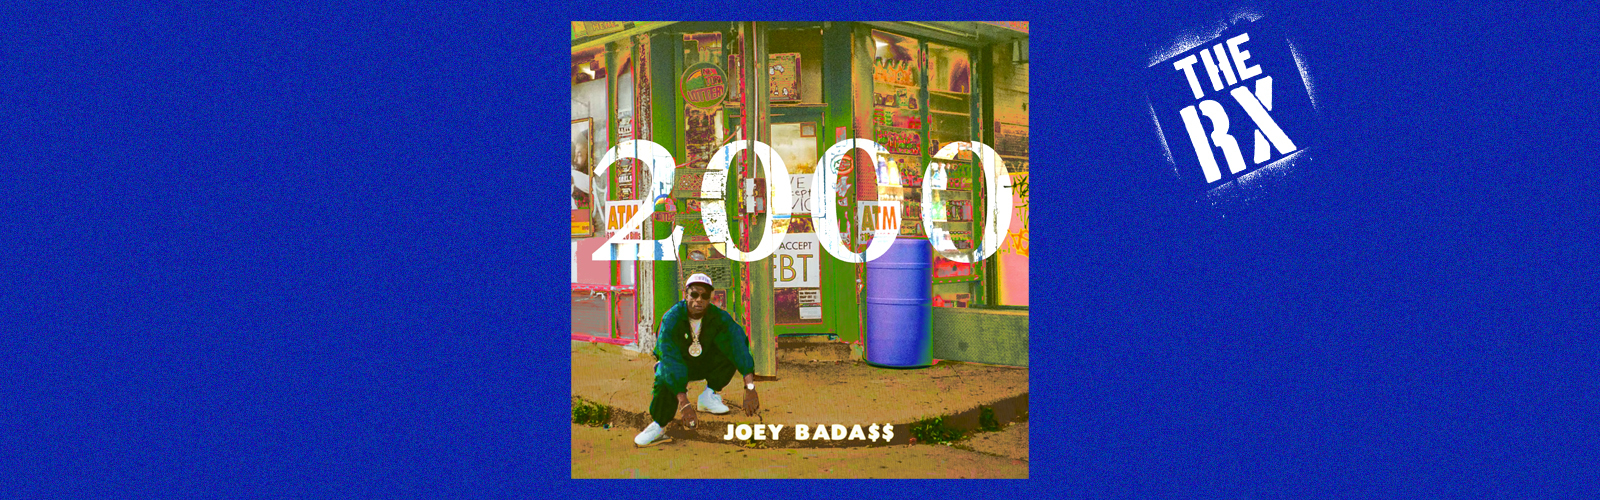 joey-badass-2000-review